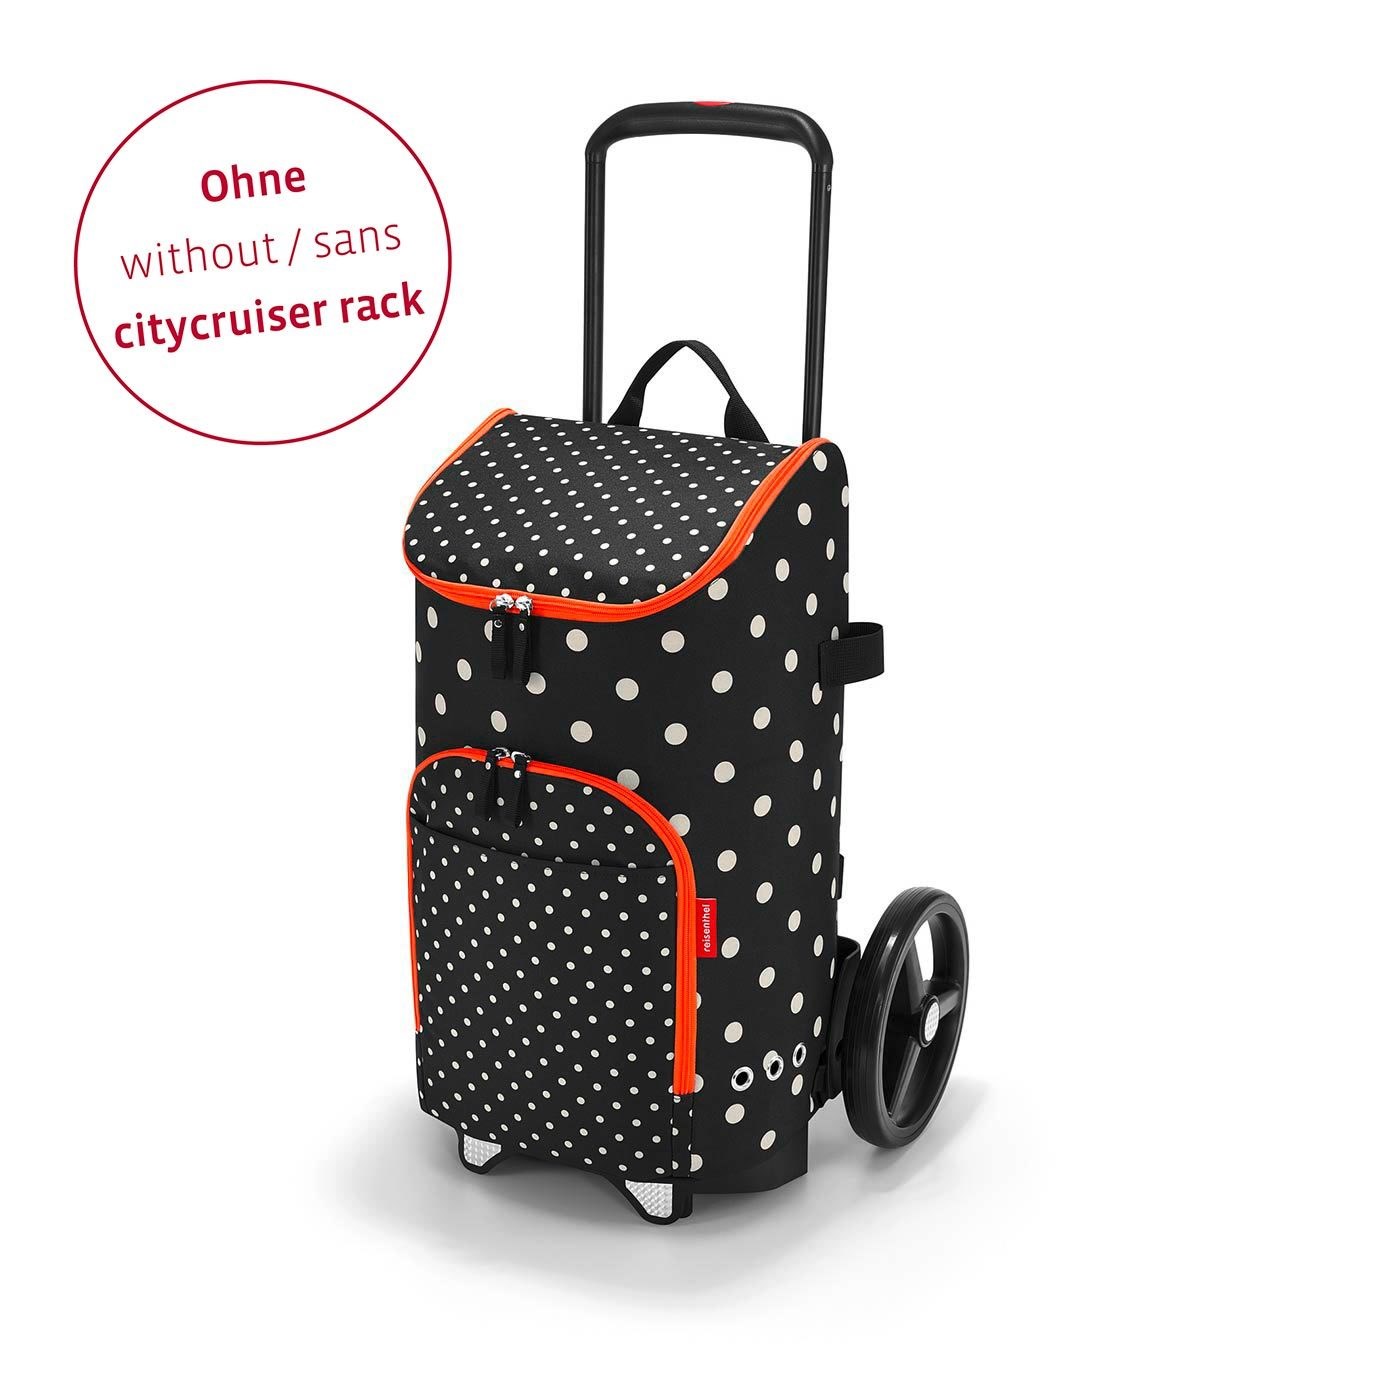 Městská taška Citycruiser Bag mixed dots (bez vozíku)_0